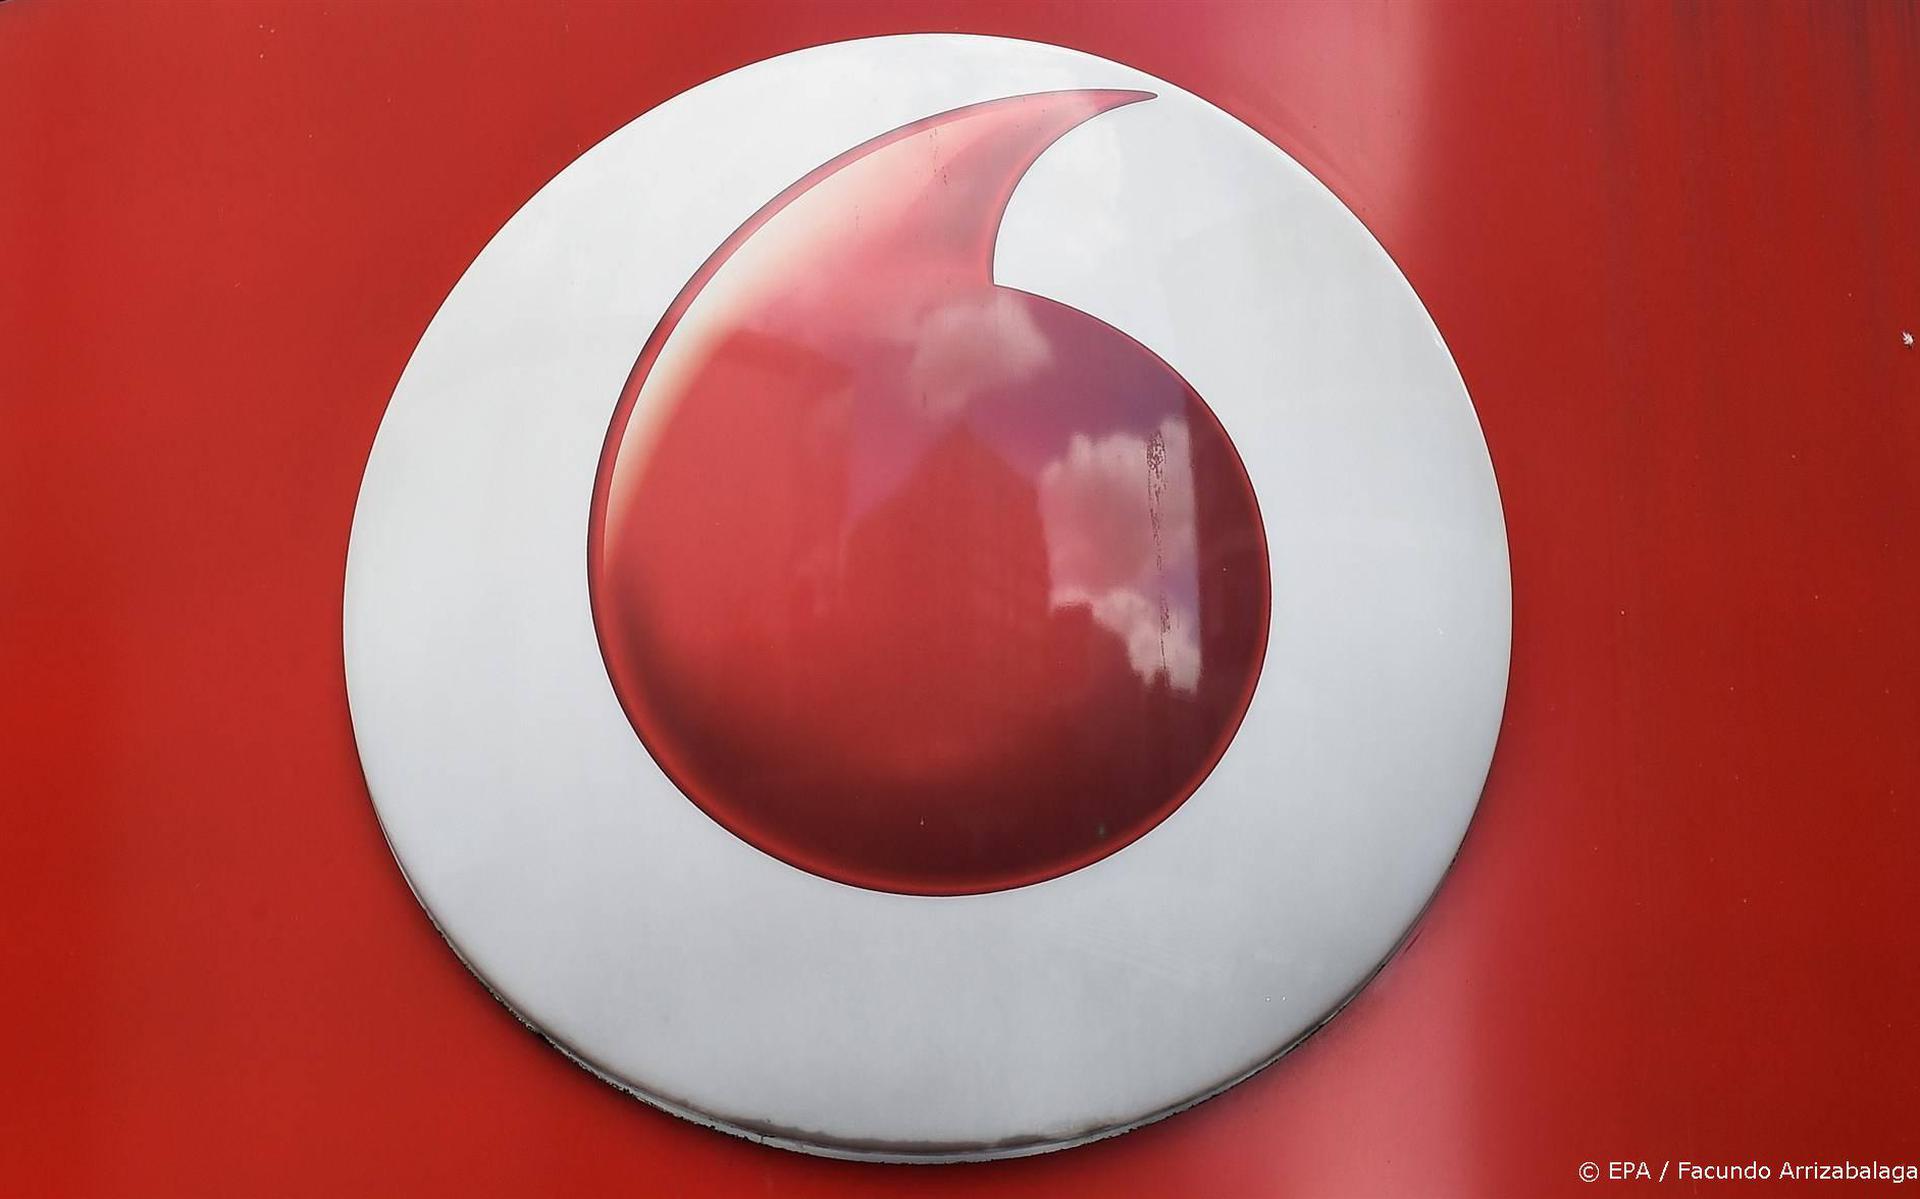 Storing Vodafone lijkt opgelost, 112 bellen kan ook weer